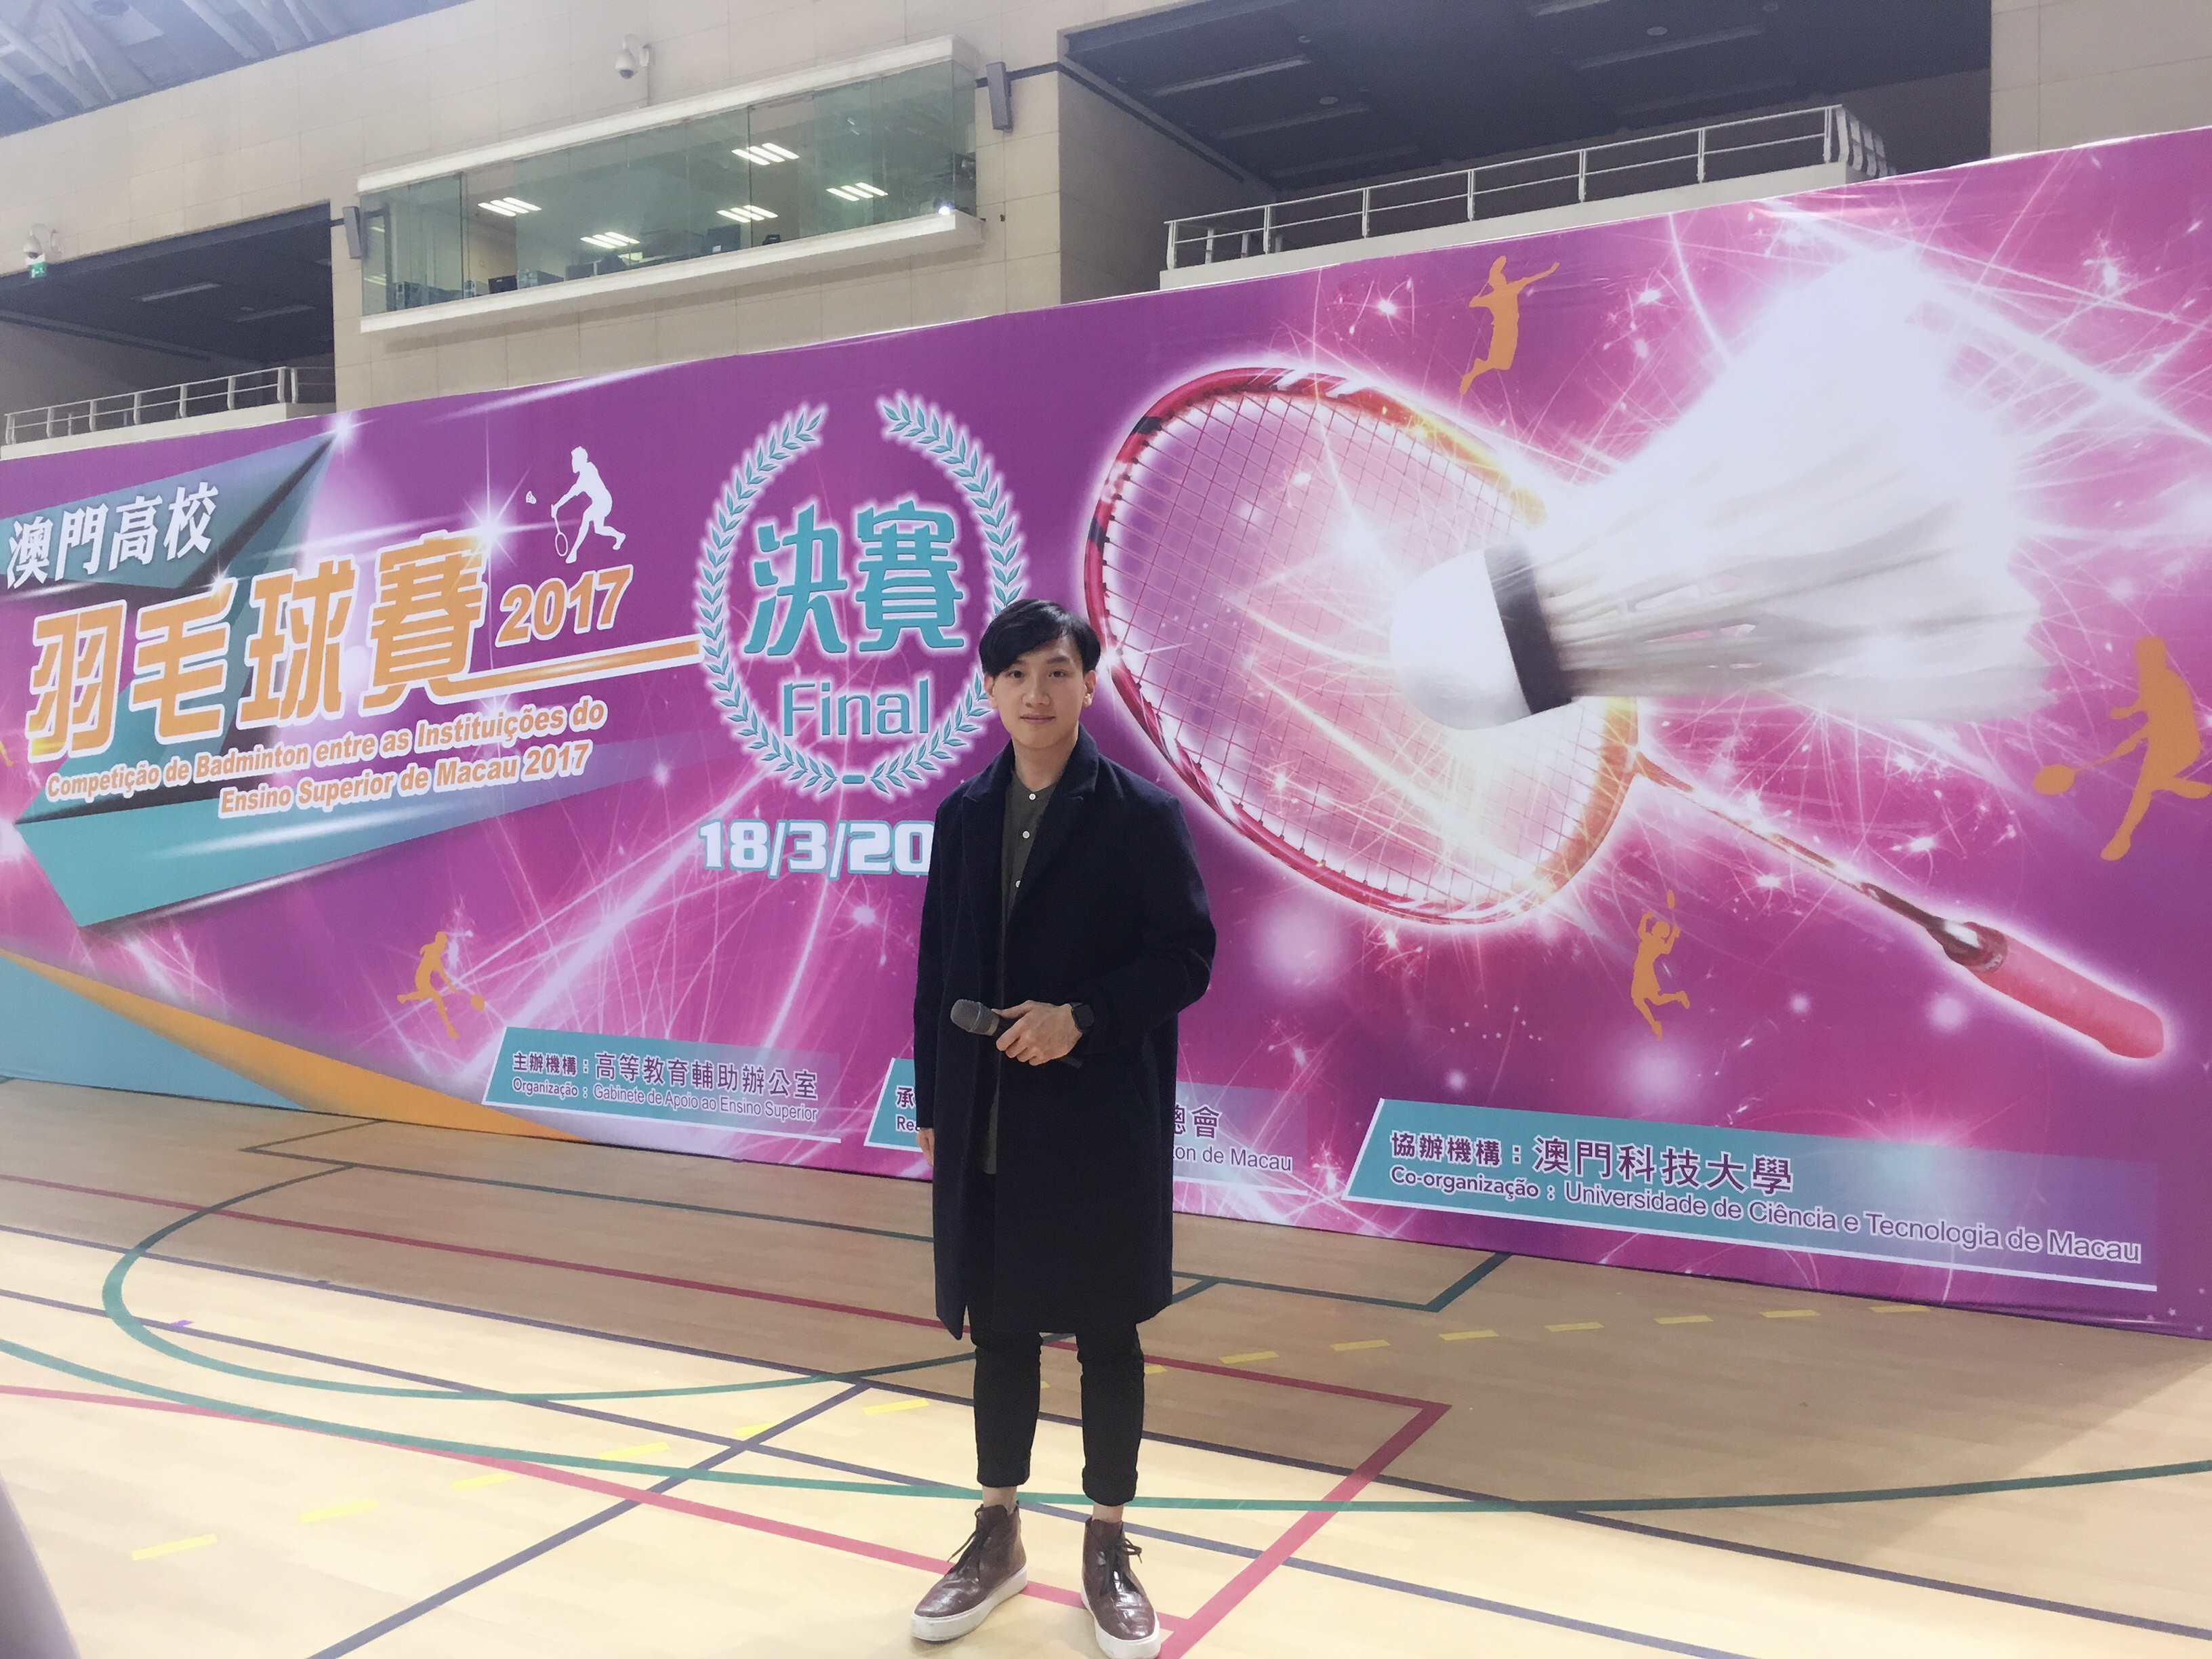 周啓陽 Elvis Chao司儀工作紀錄: 2017澳門高校羽毛球賽